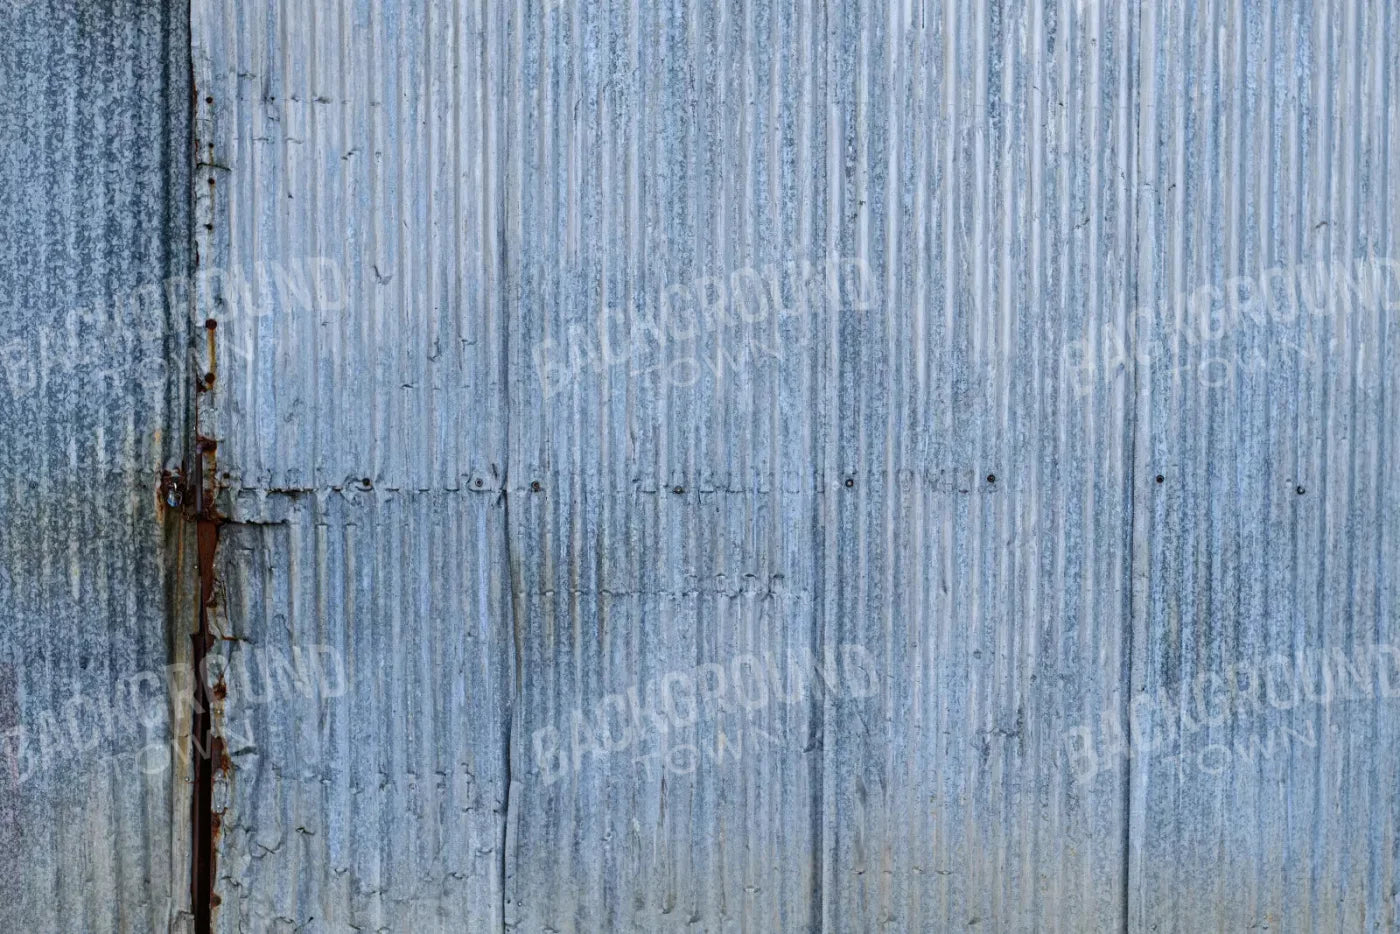 Barn Steel 8X5 Ultracloth ( 96 X 60 Inch ) Backdrop